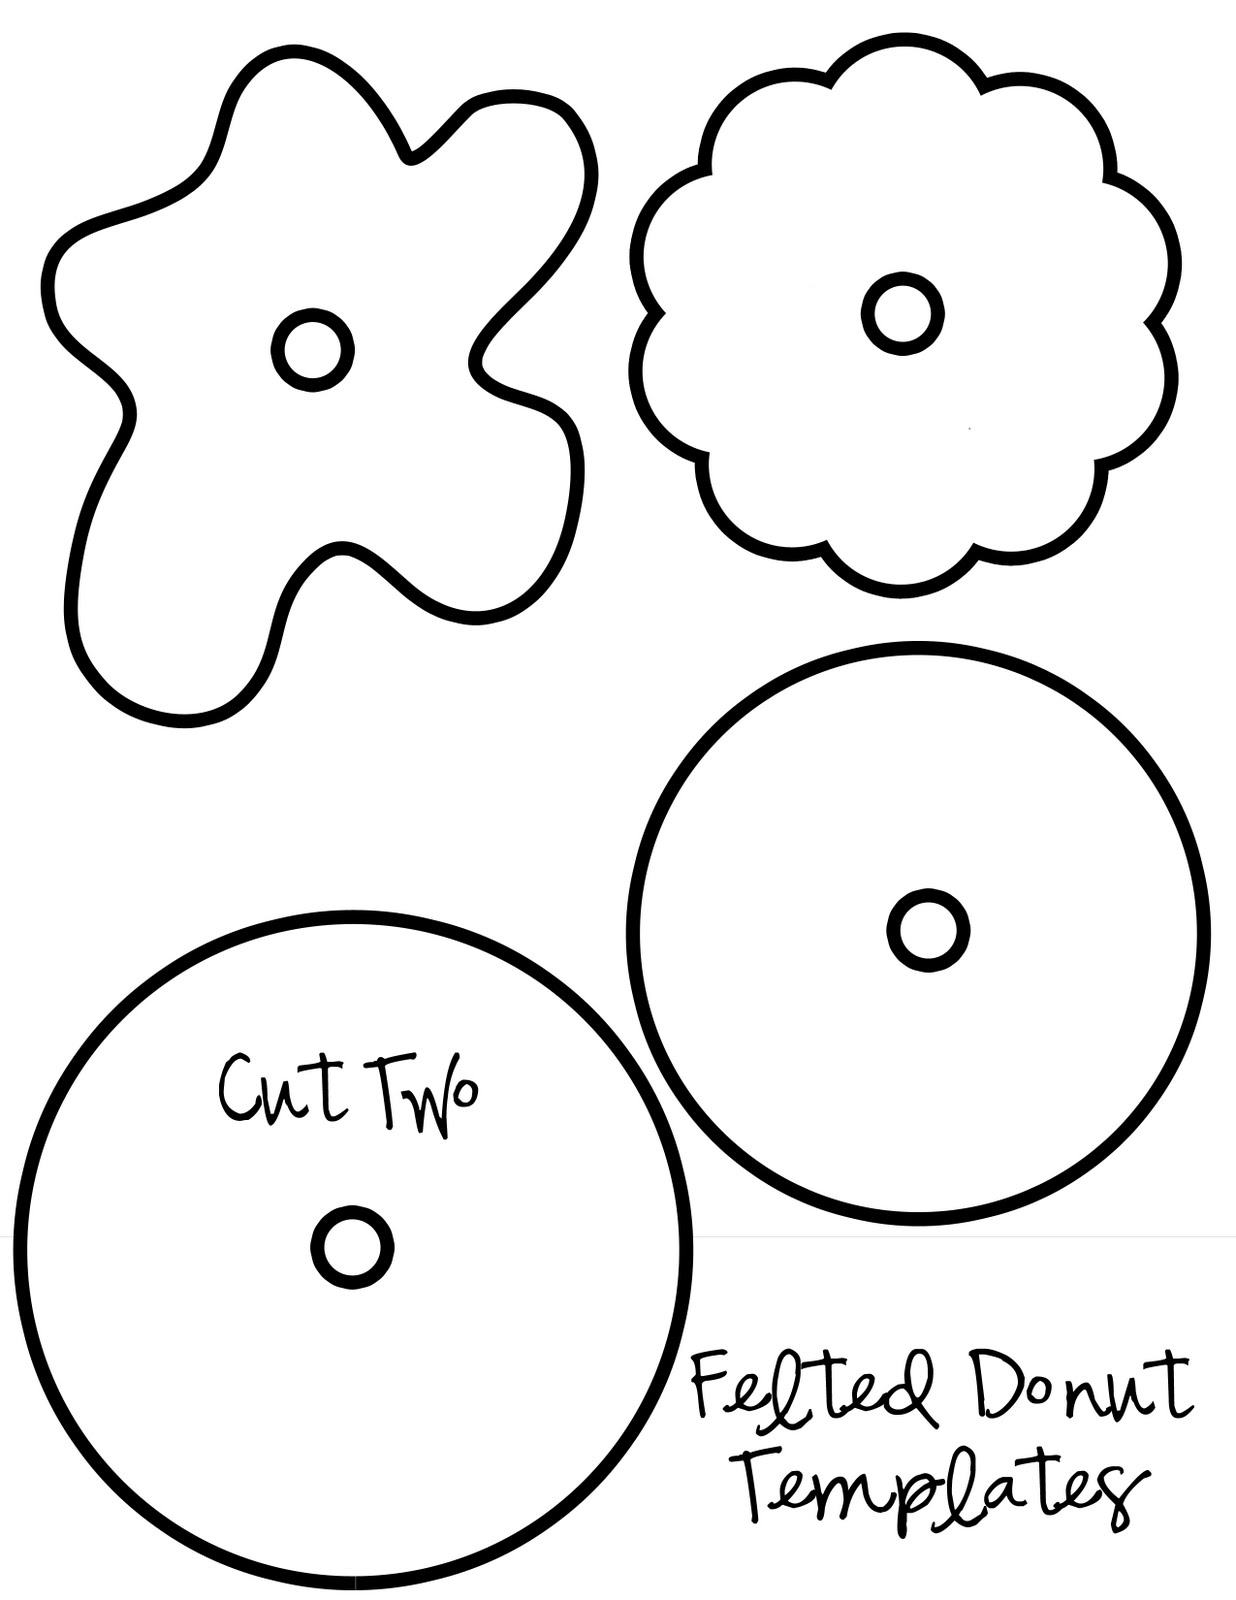 my-pretties-felt-donuts